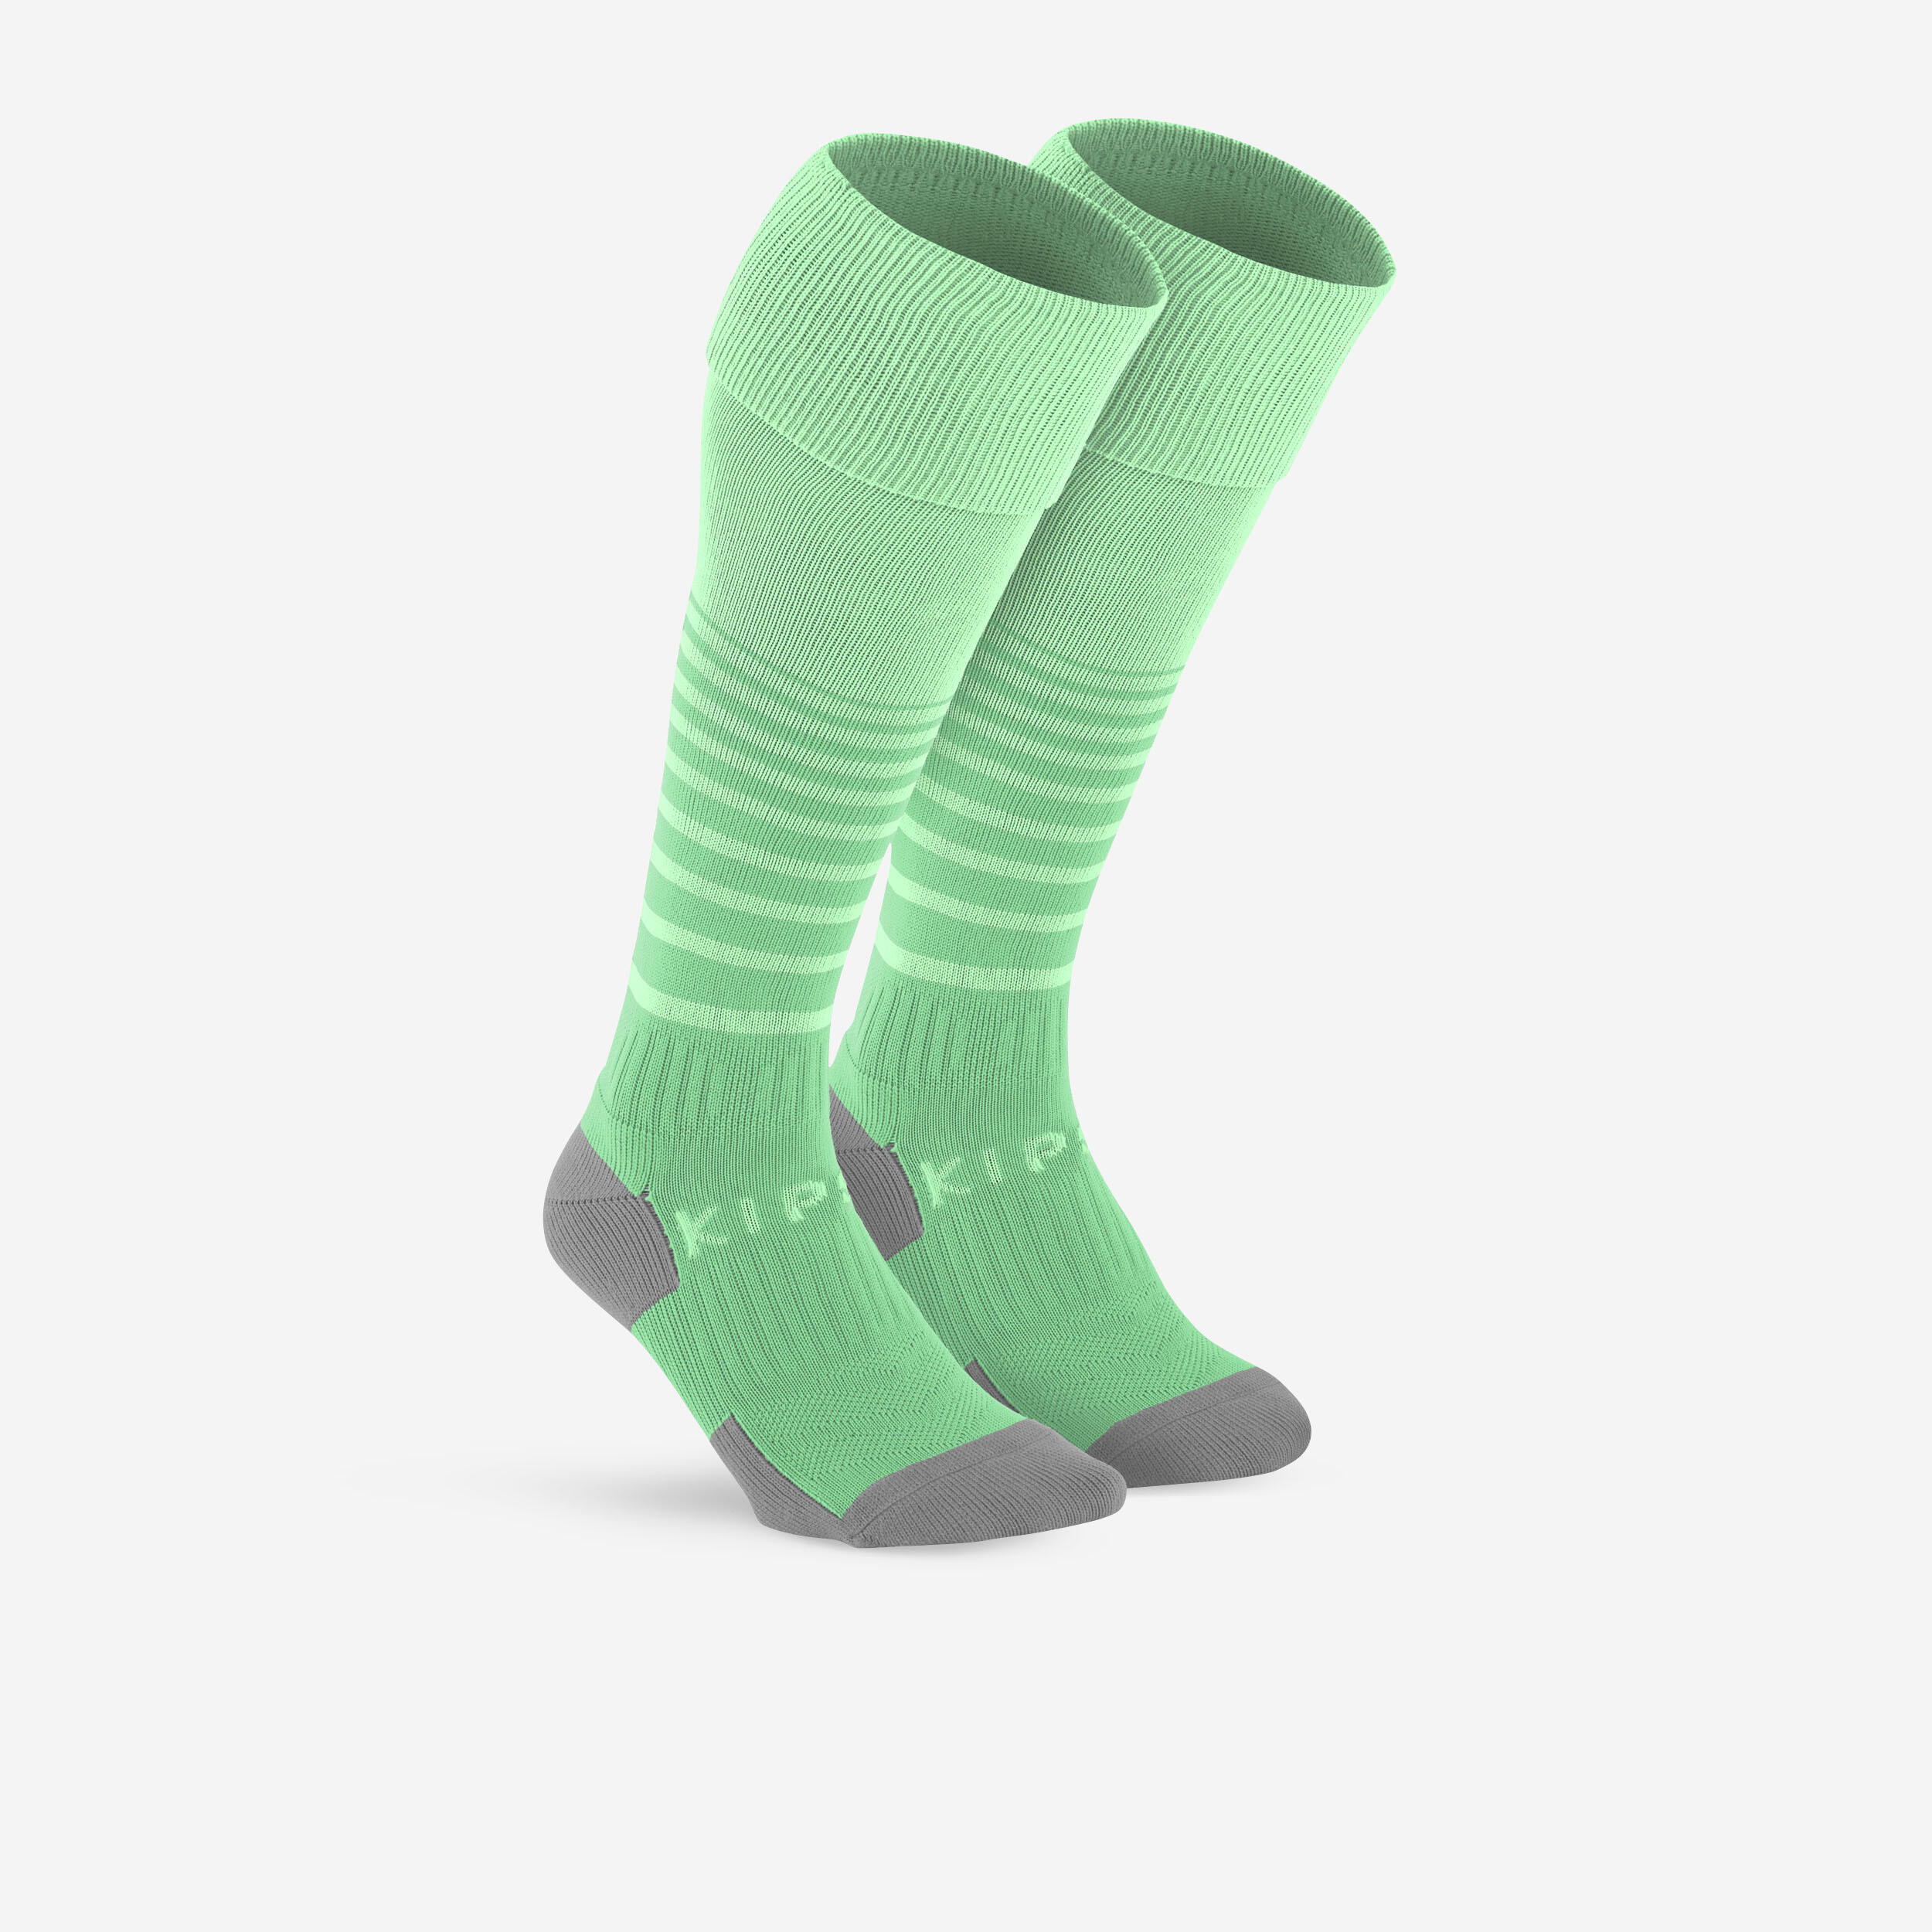 KIPSTA Kids' breathable football socks, emerald